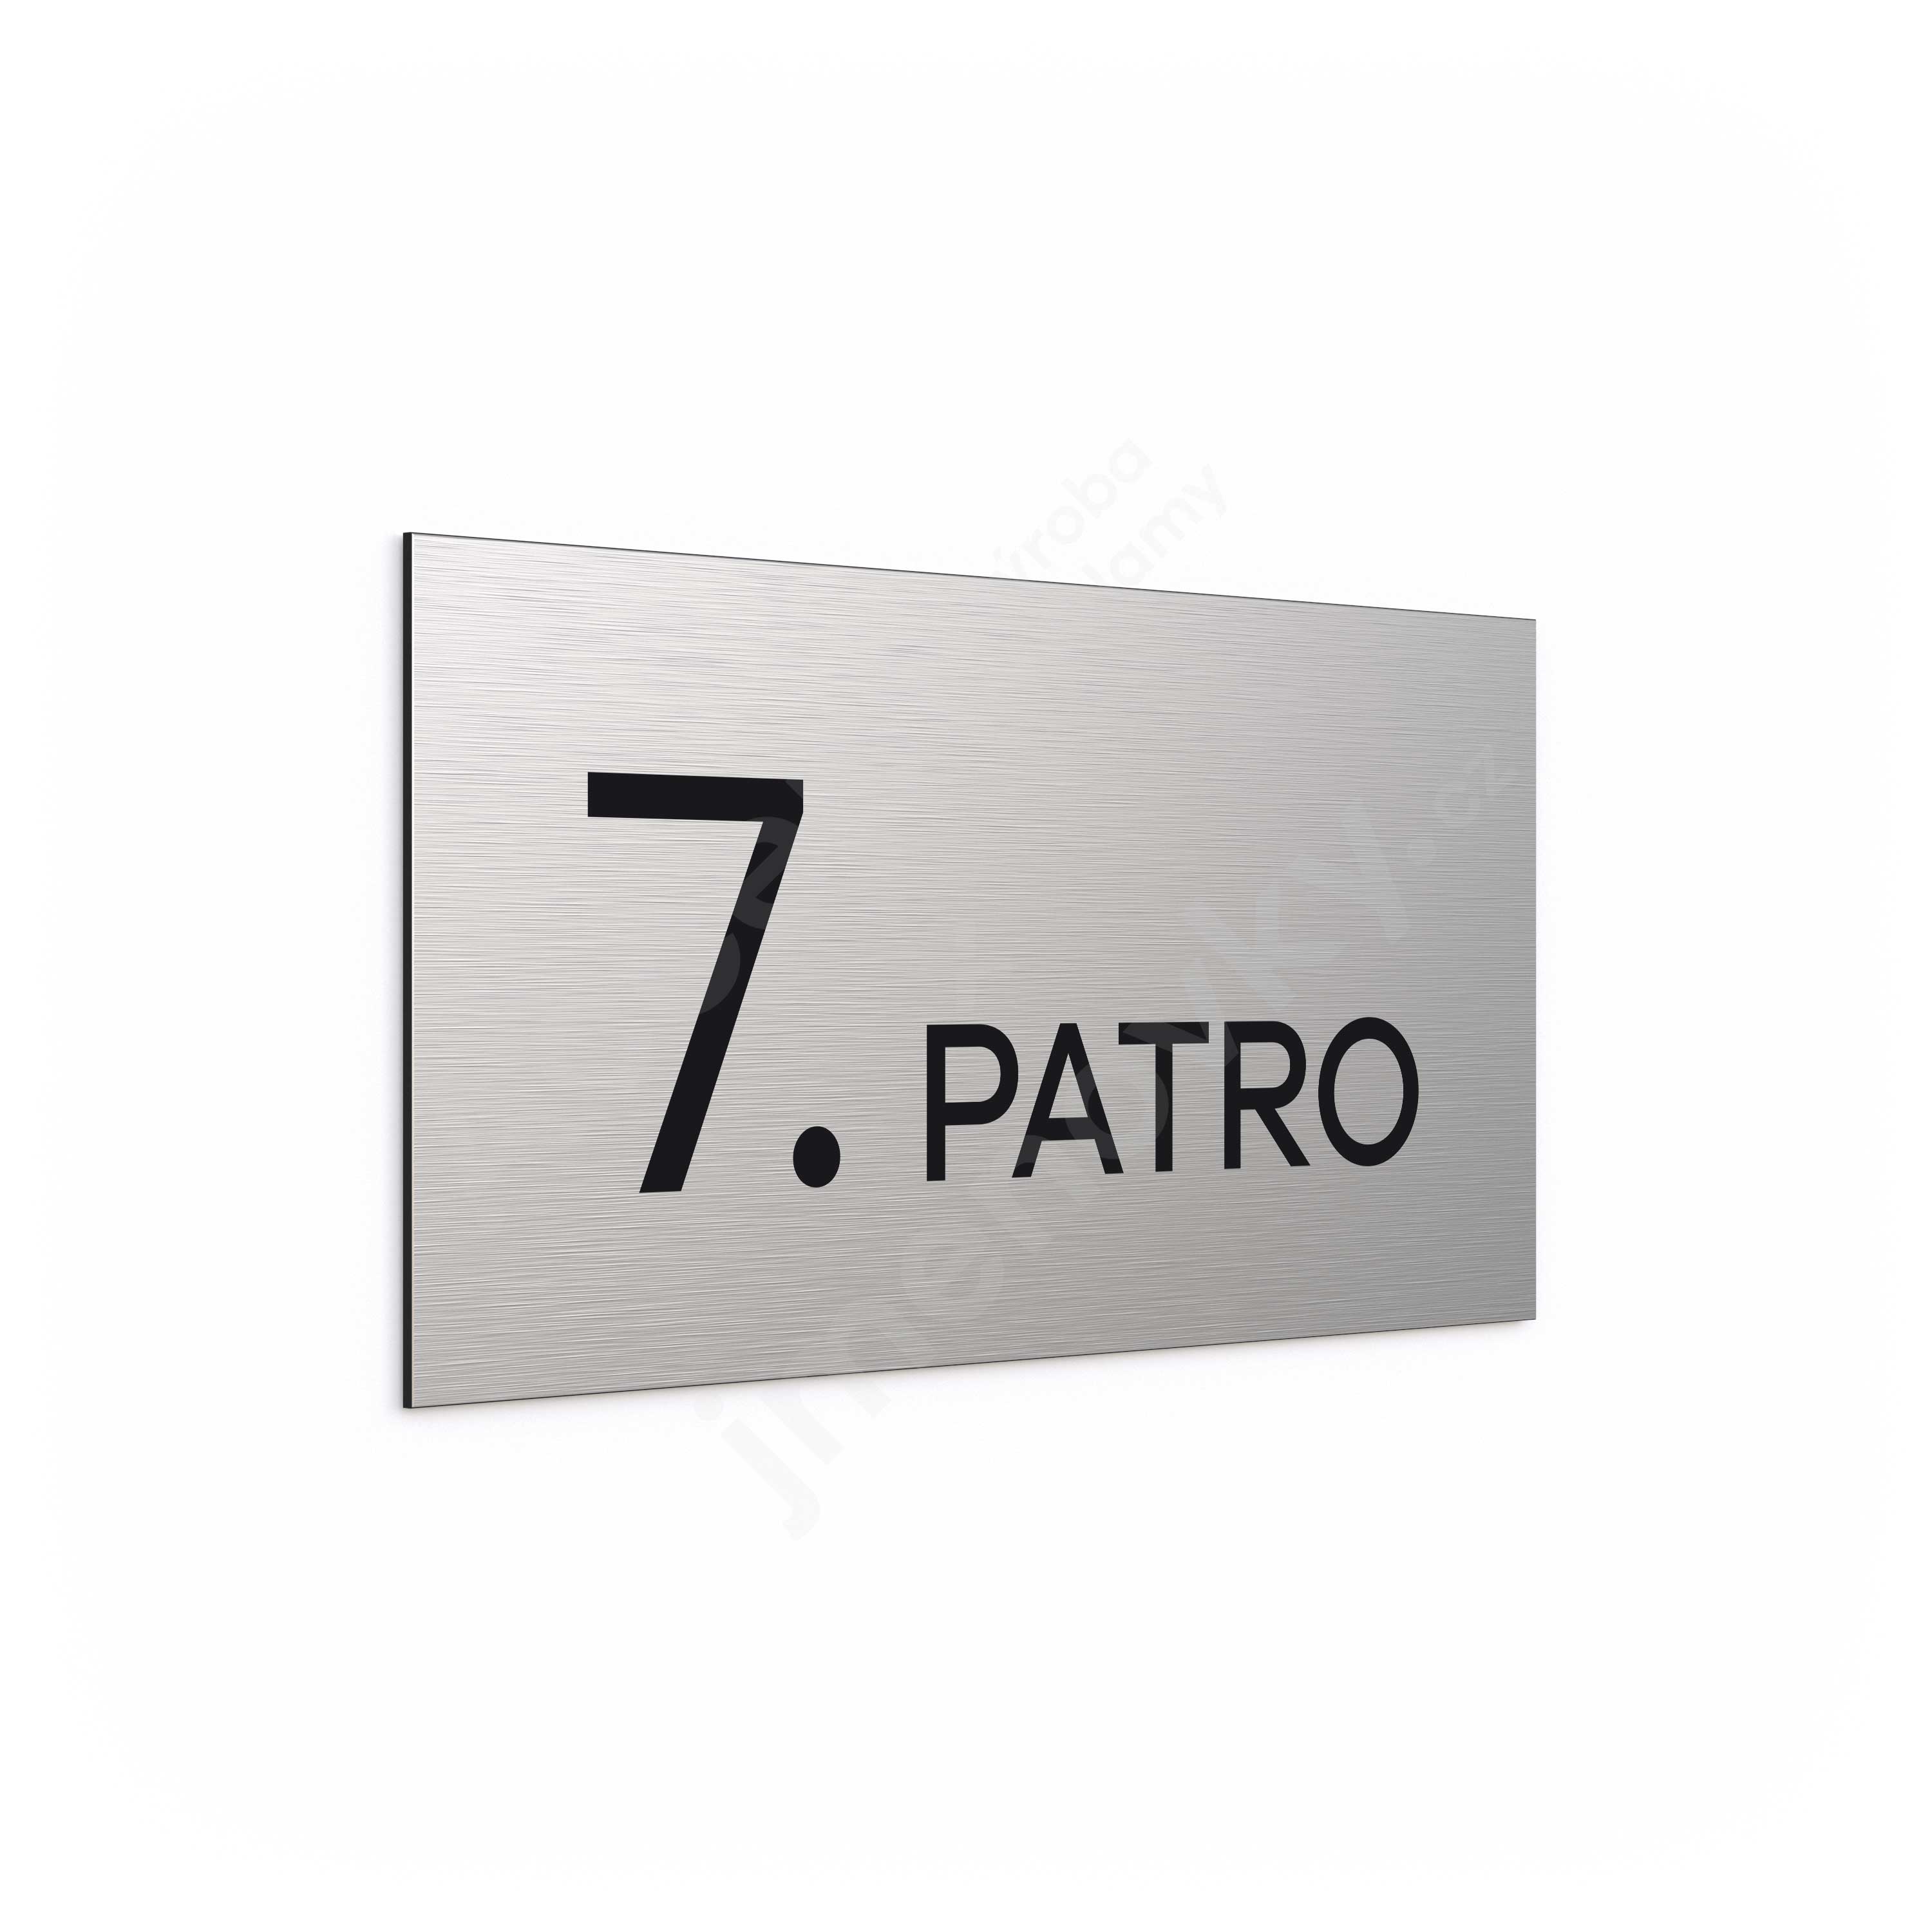 Oznaen podla "7. PATRO" (300 x 150 mm)